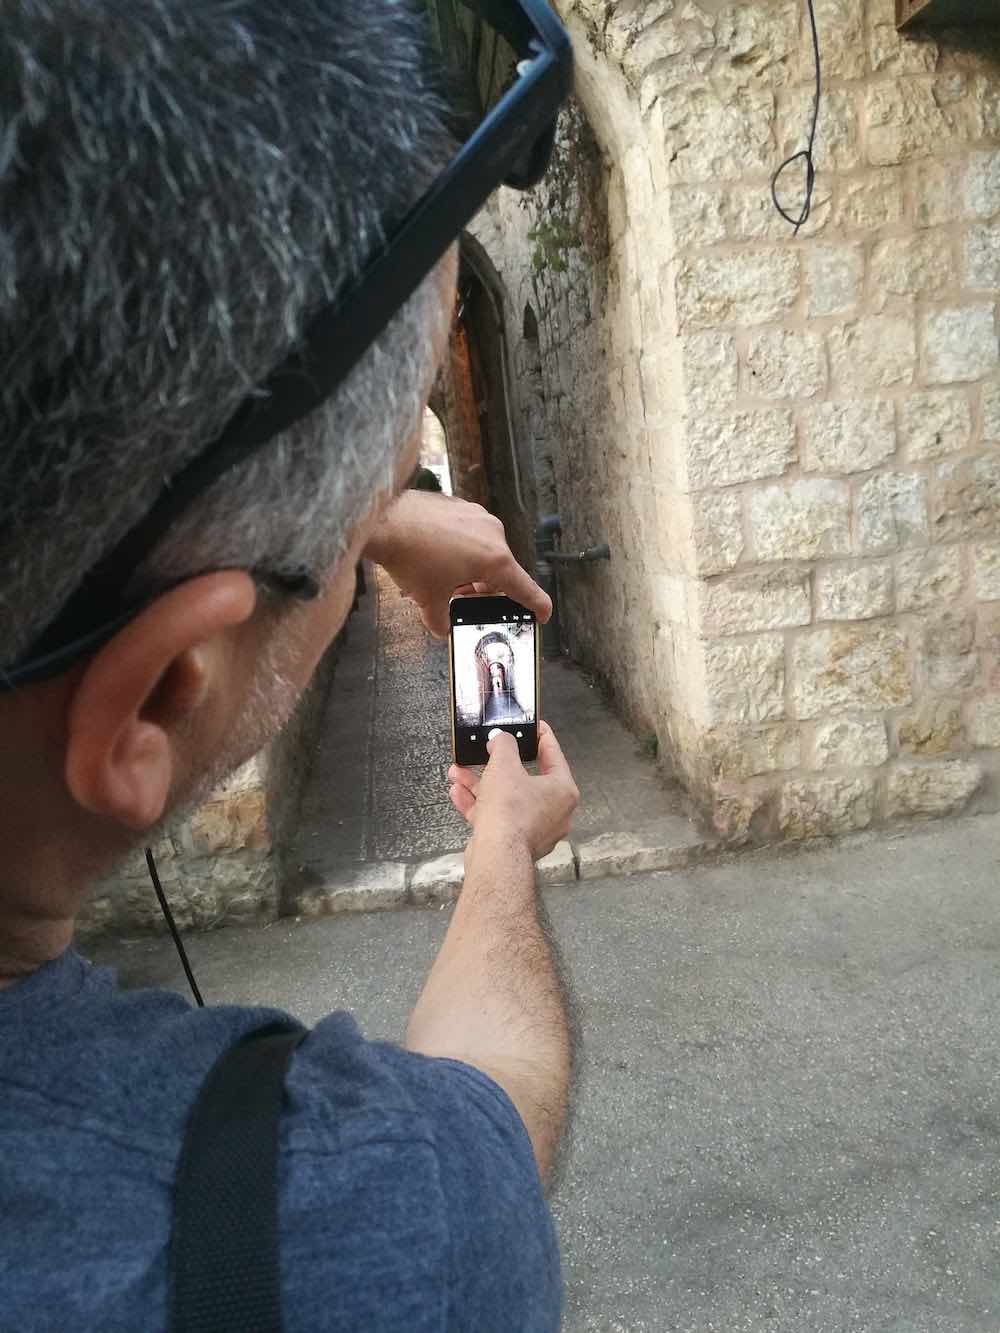 Jerusalén lanza packs de descuento para jóvenes turistas